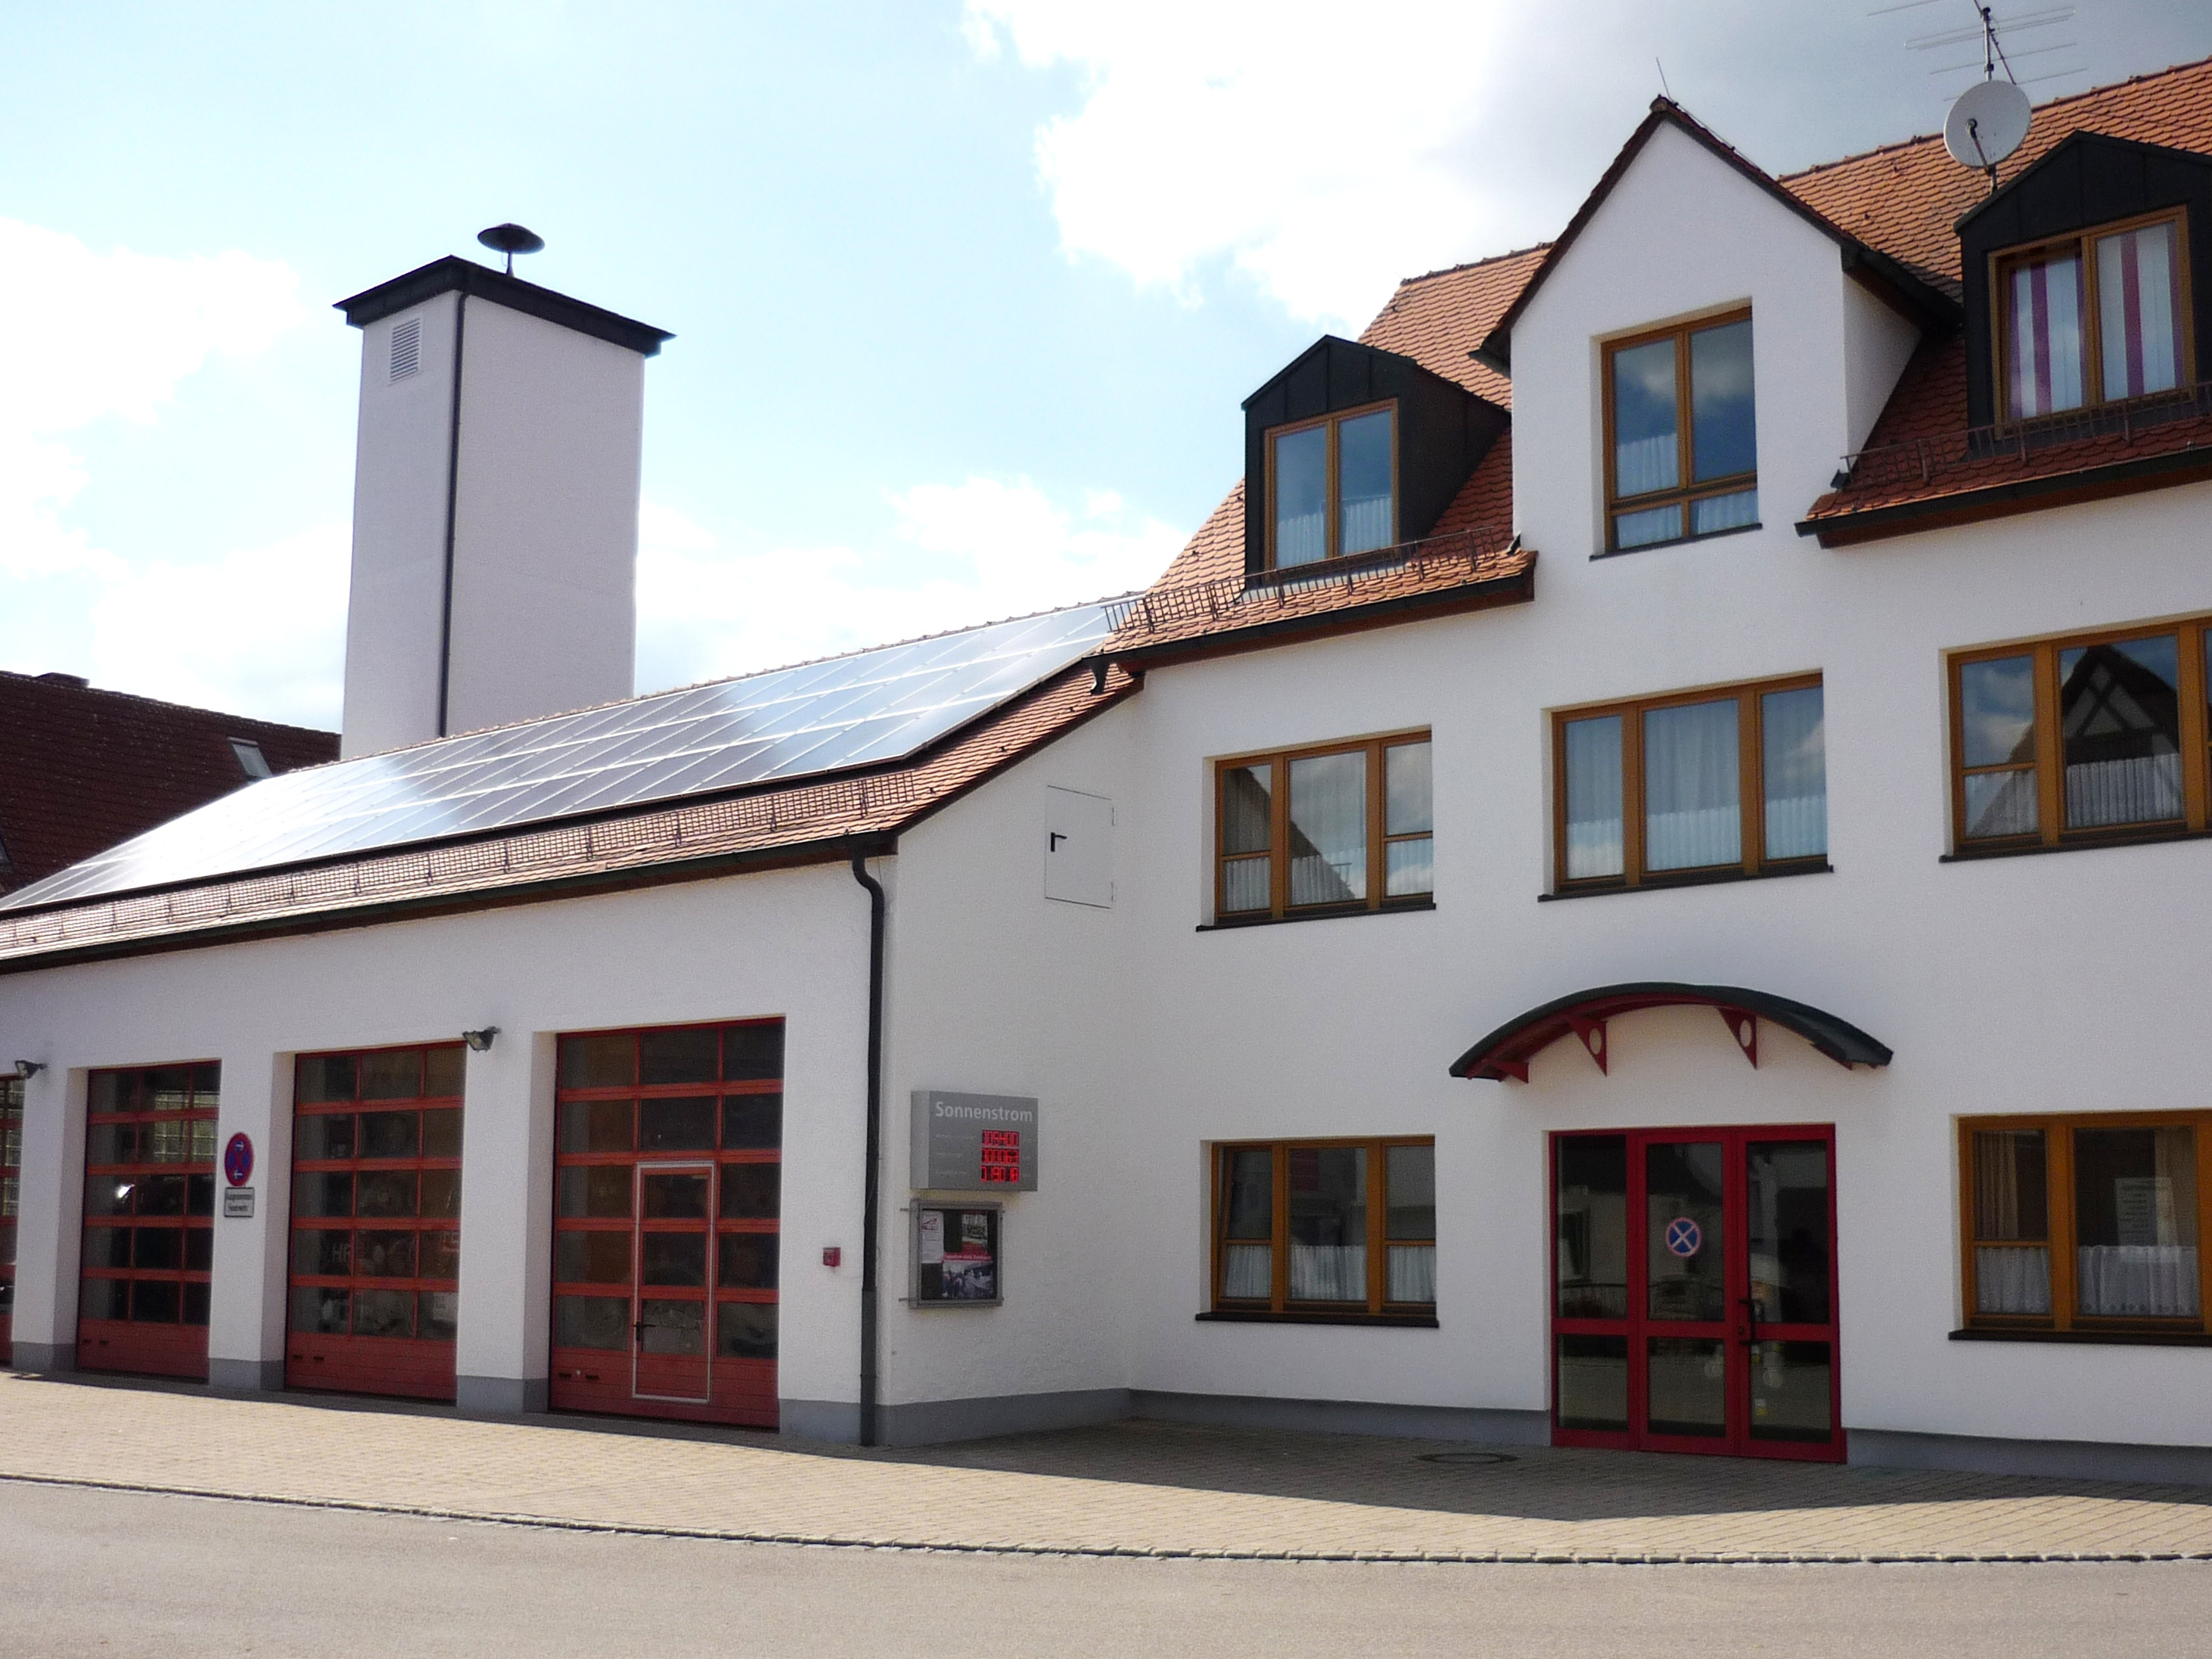  Feuerwehrhaus Schwand 